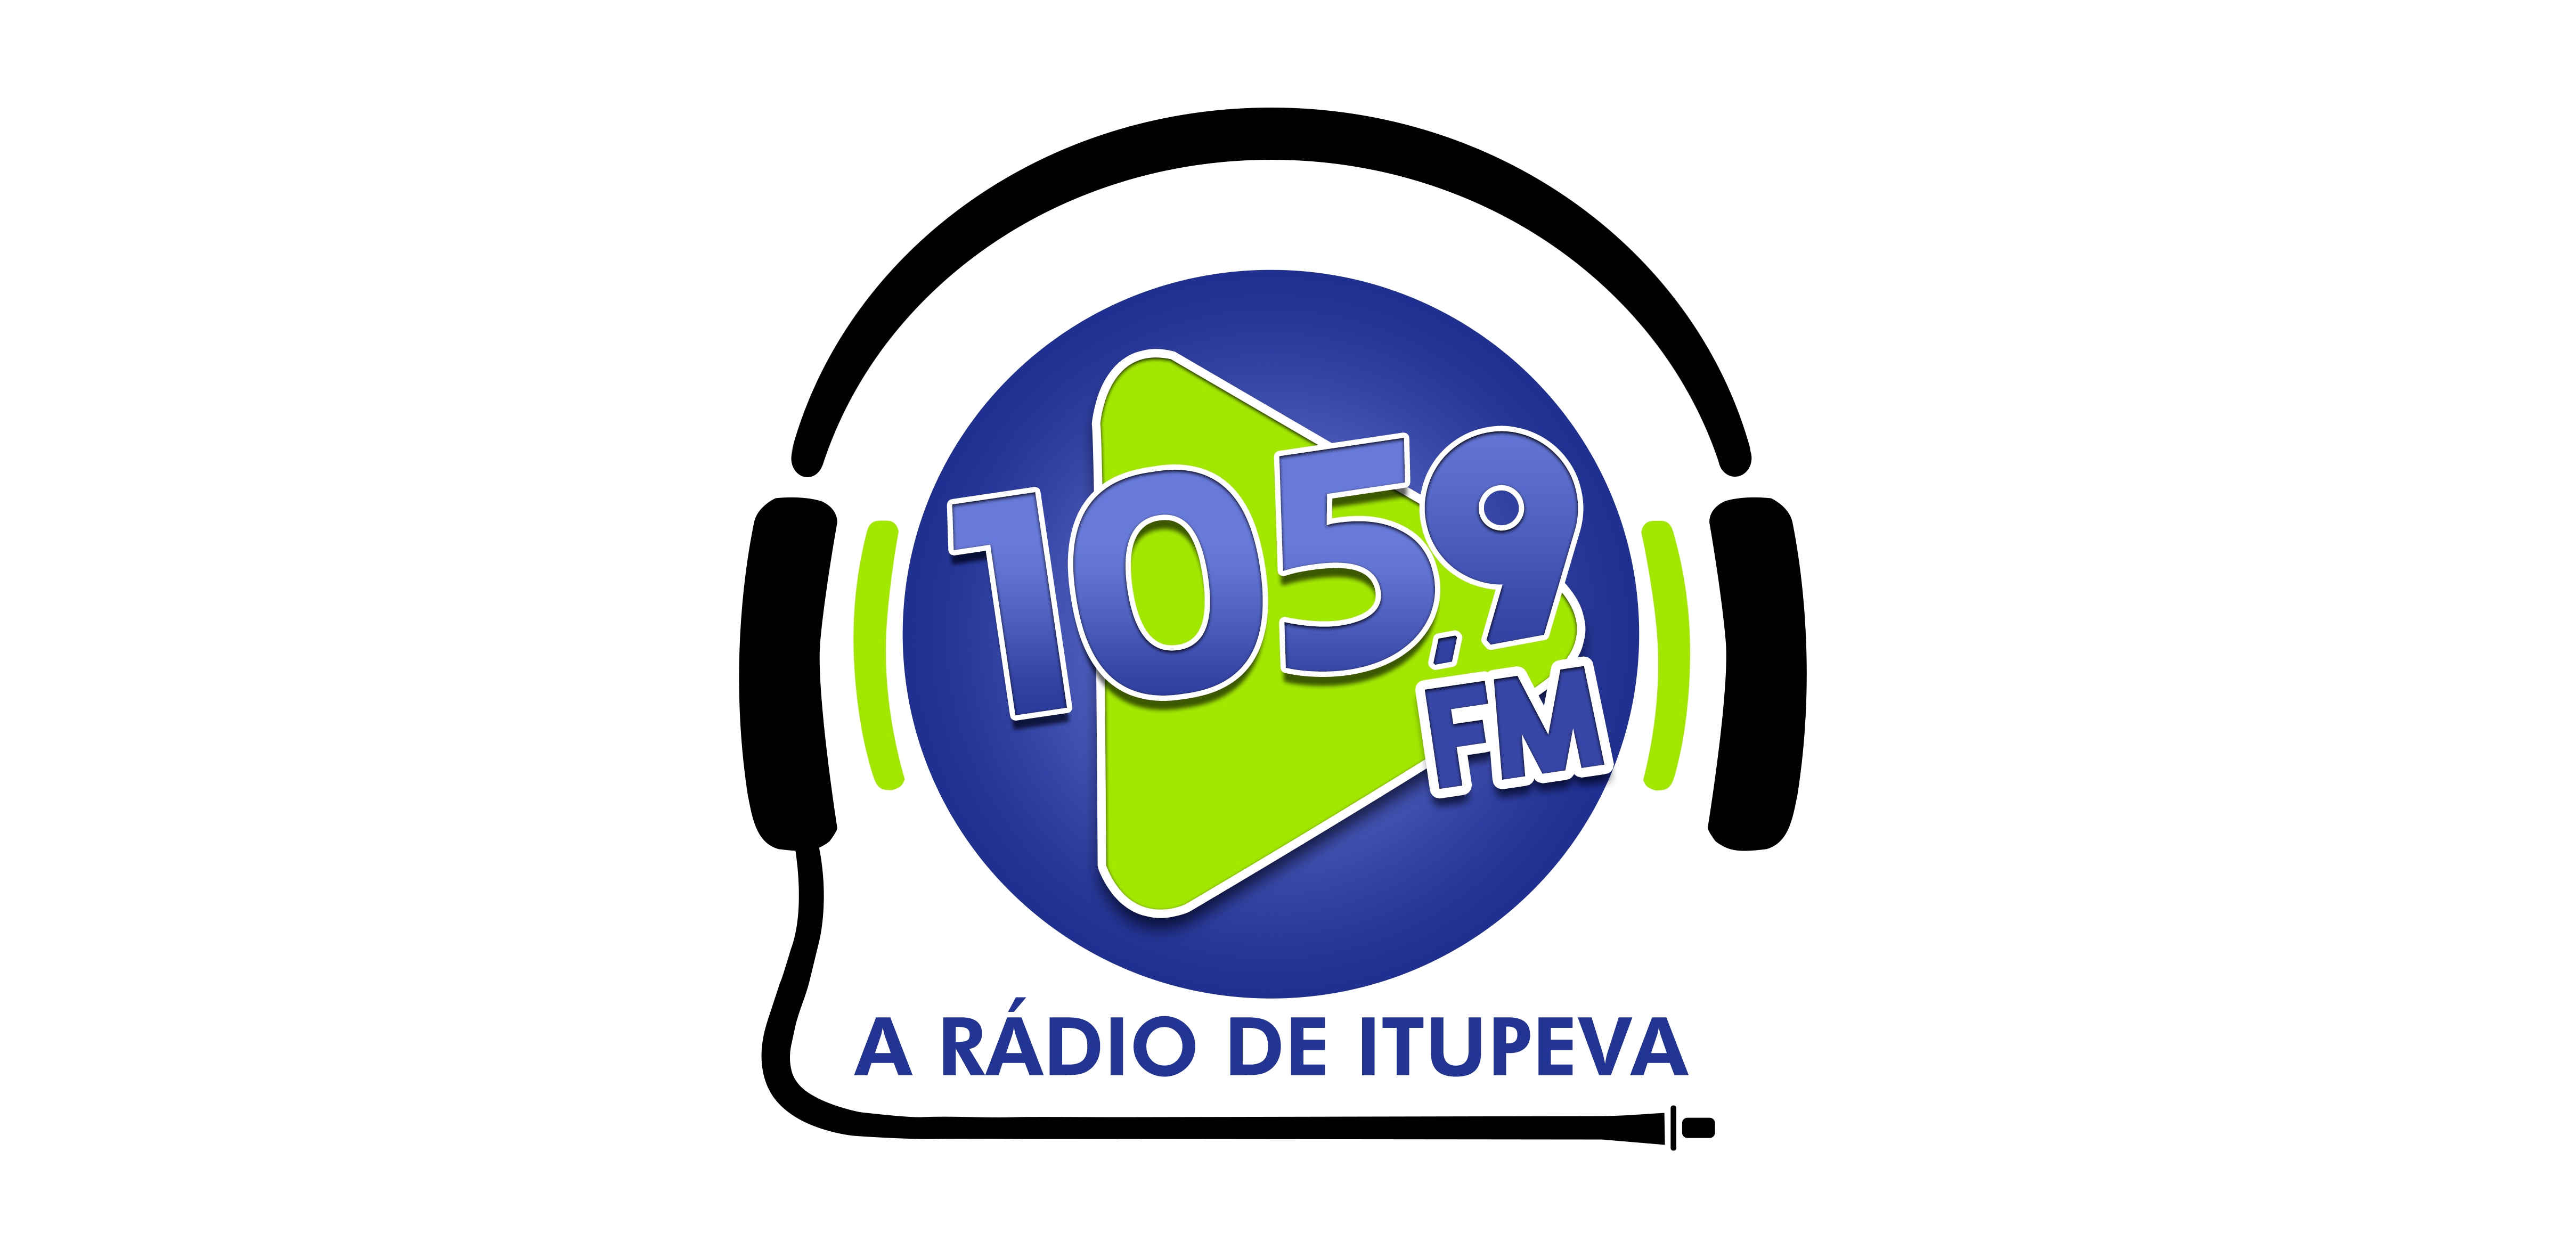 Radio de Itupeva